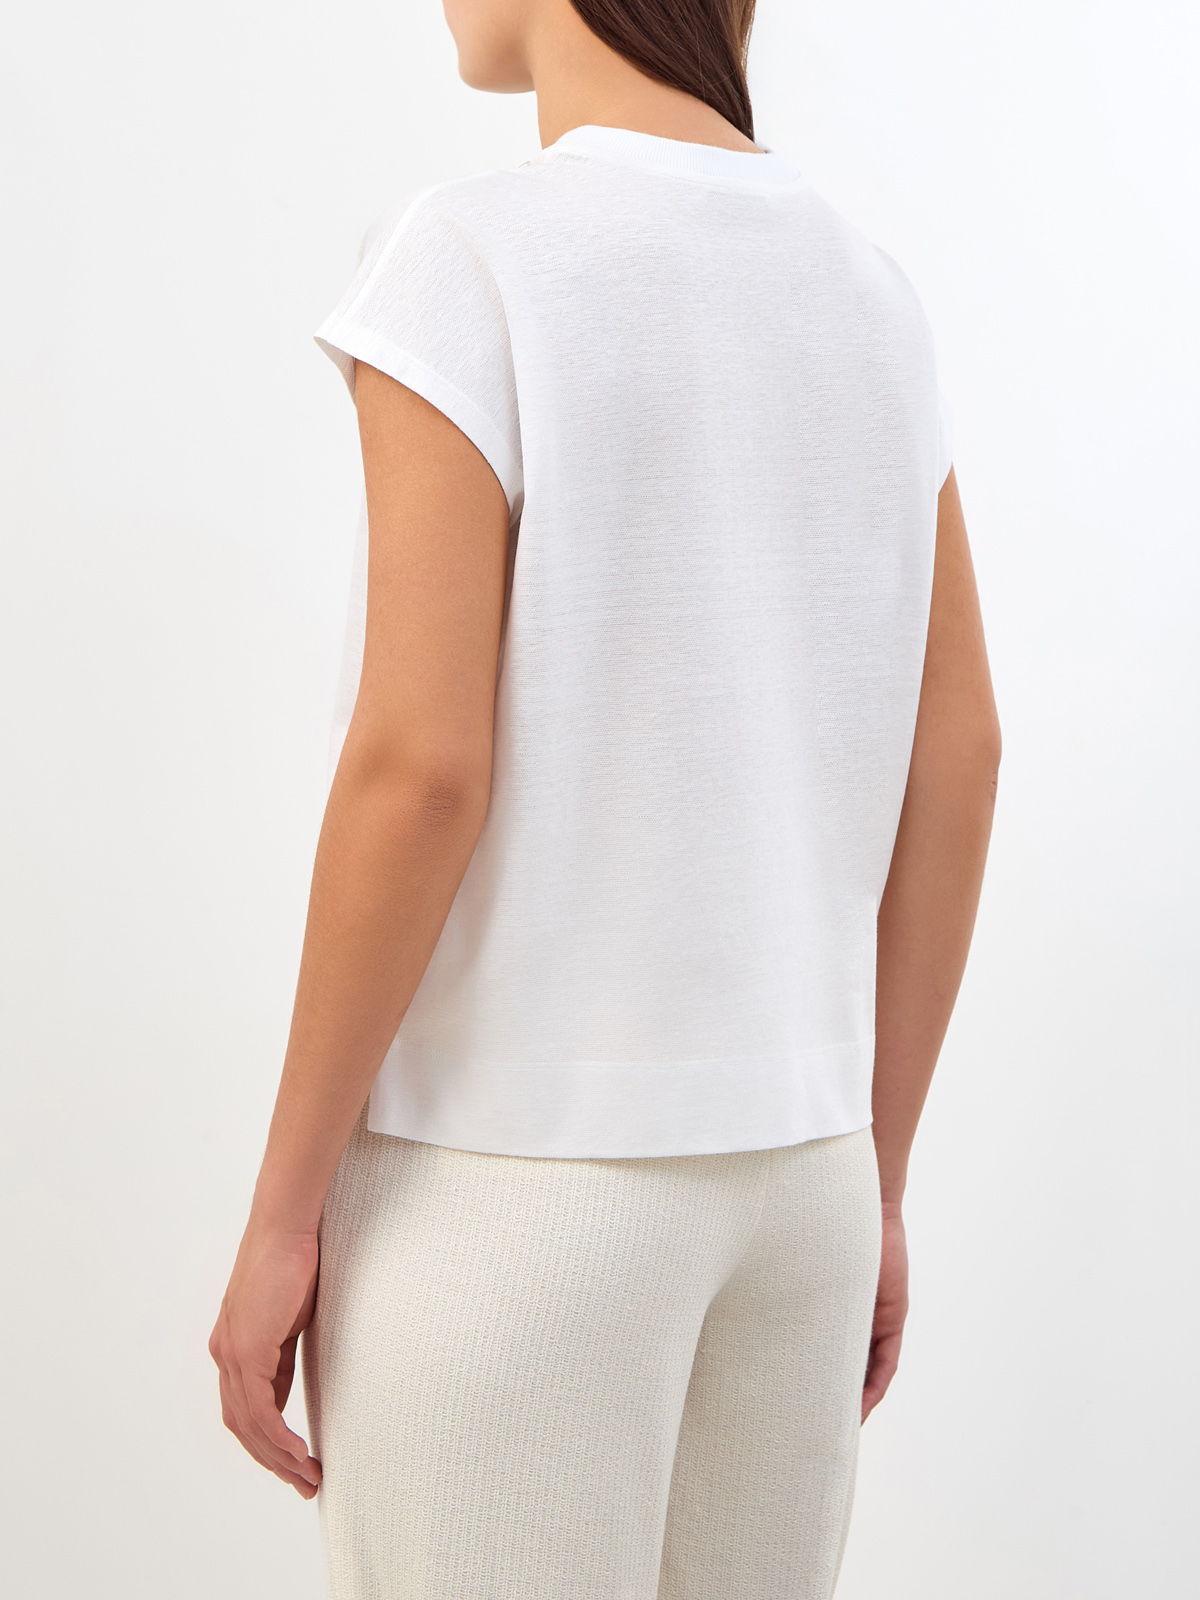 Свободная футболка из хлопка и льна с трикотажным воротом PESERICO, цвет белый, размер 38;40;42;44;48 - фото 4